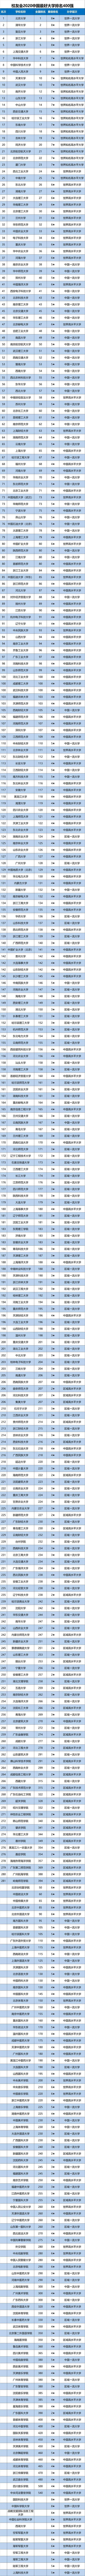 2020年世界大学排名_2020年中医药大学排名:25所高校上榜!上海中医药大学